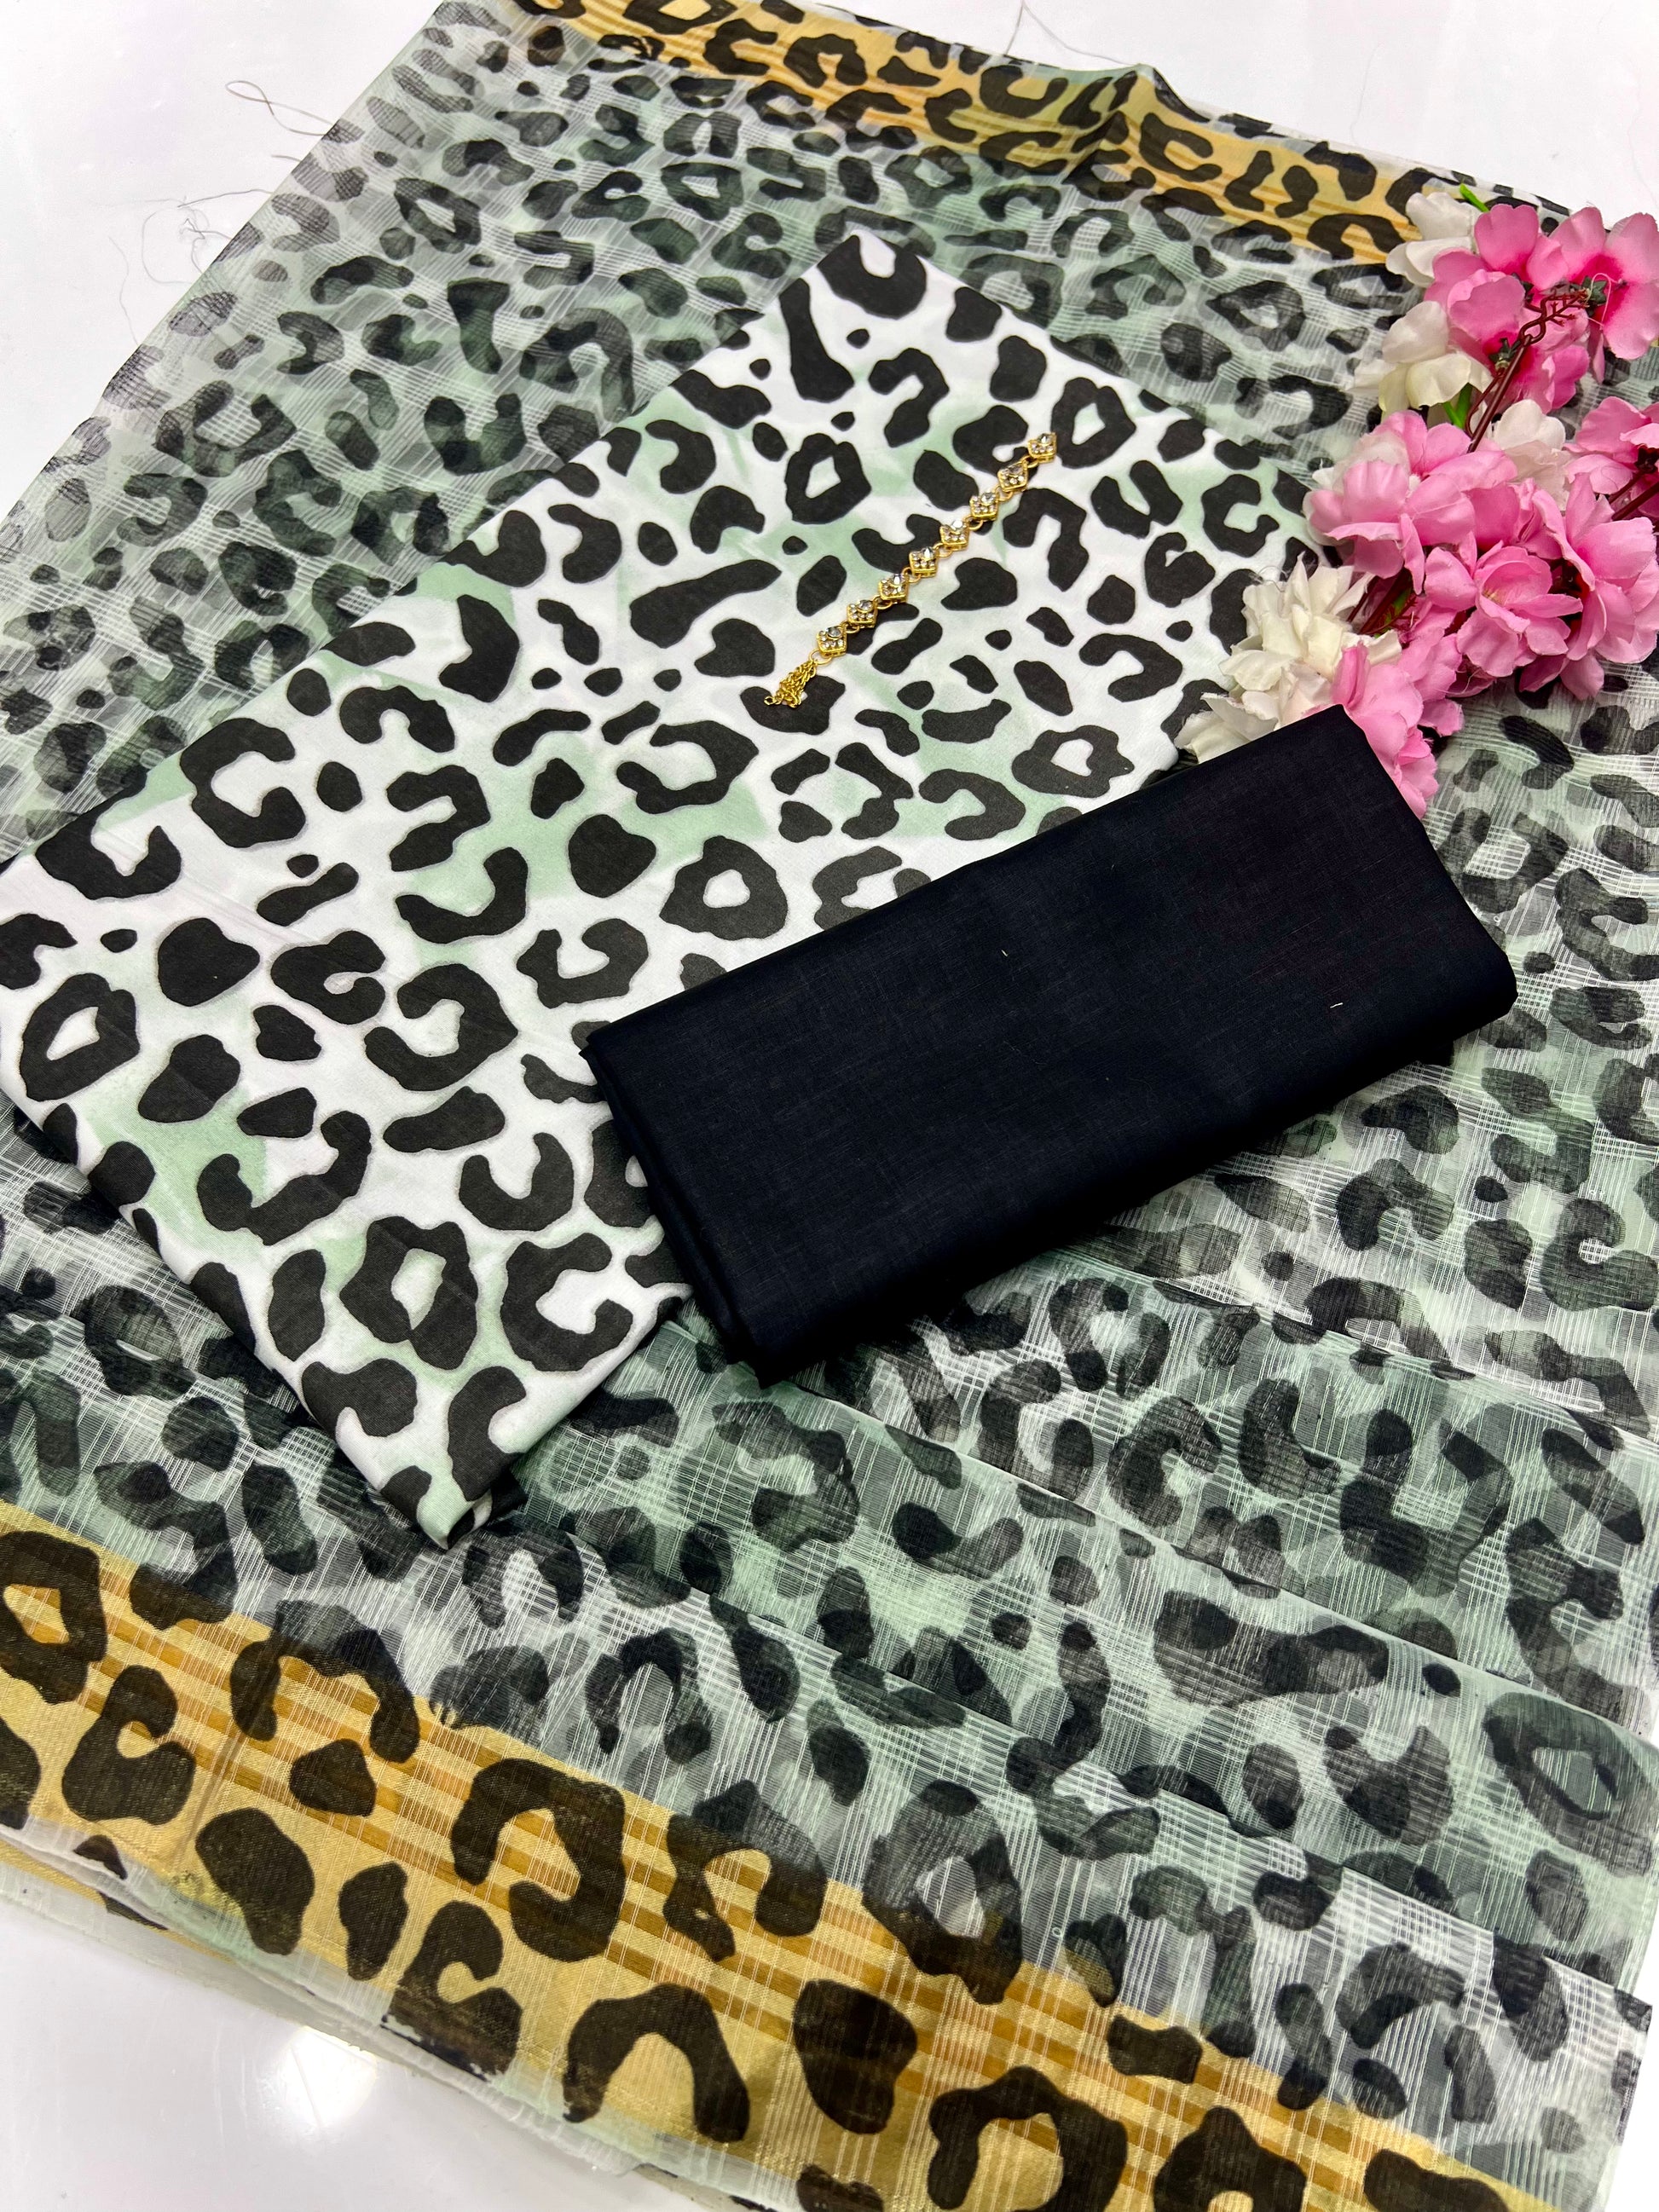 Cheetah Print Fabric at Rs 40/meter in Surat